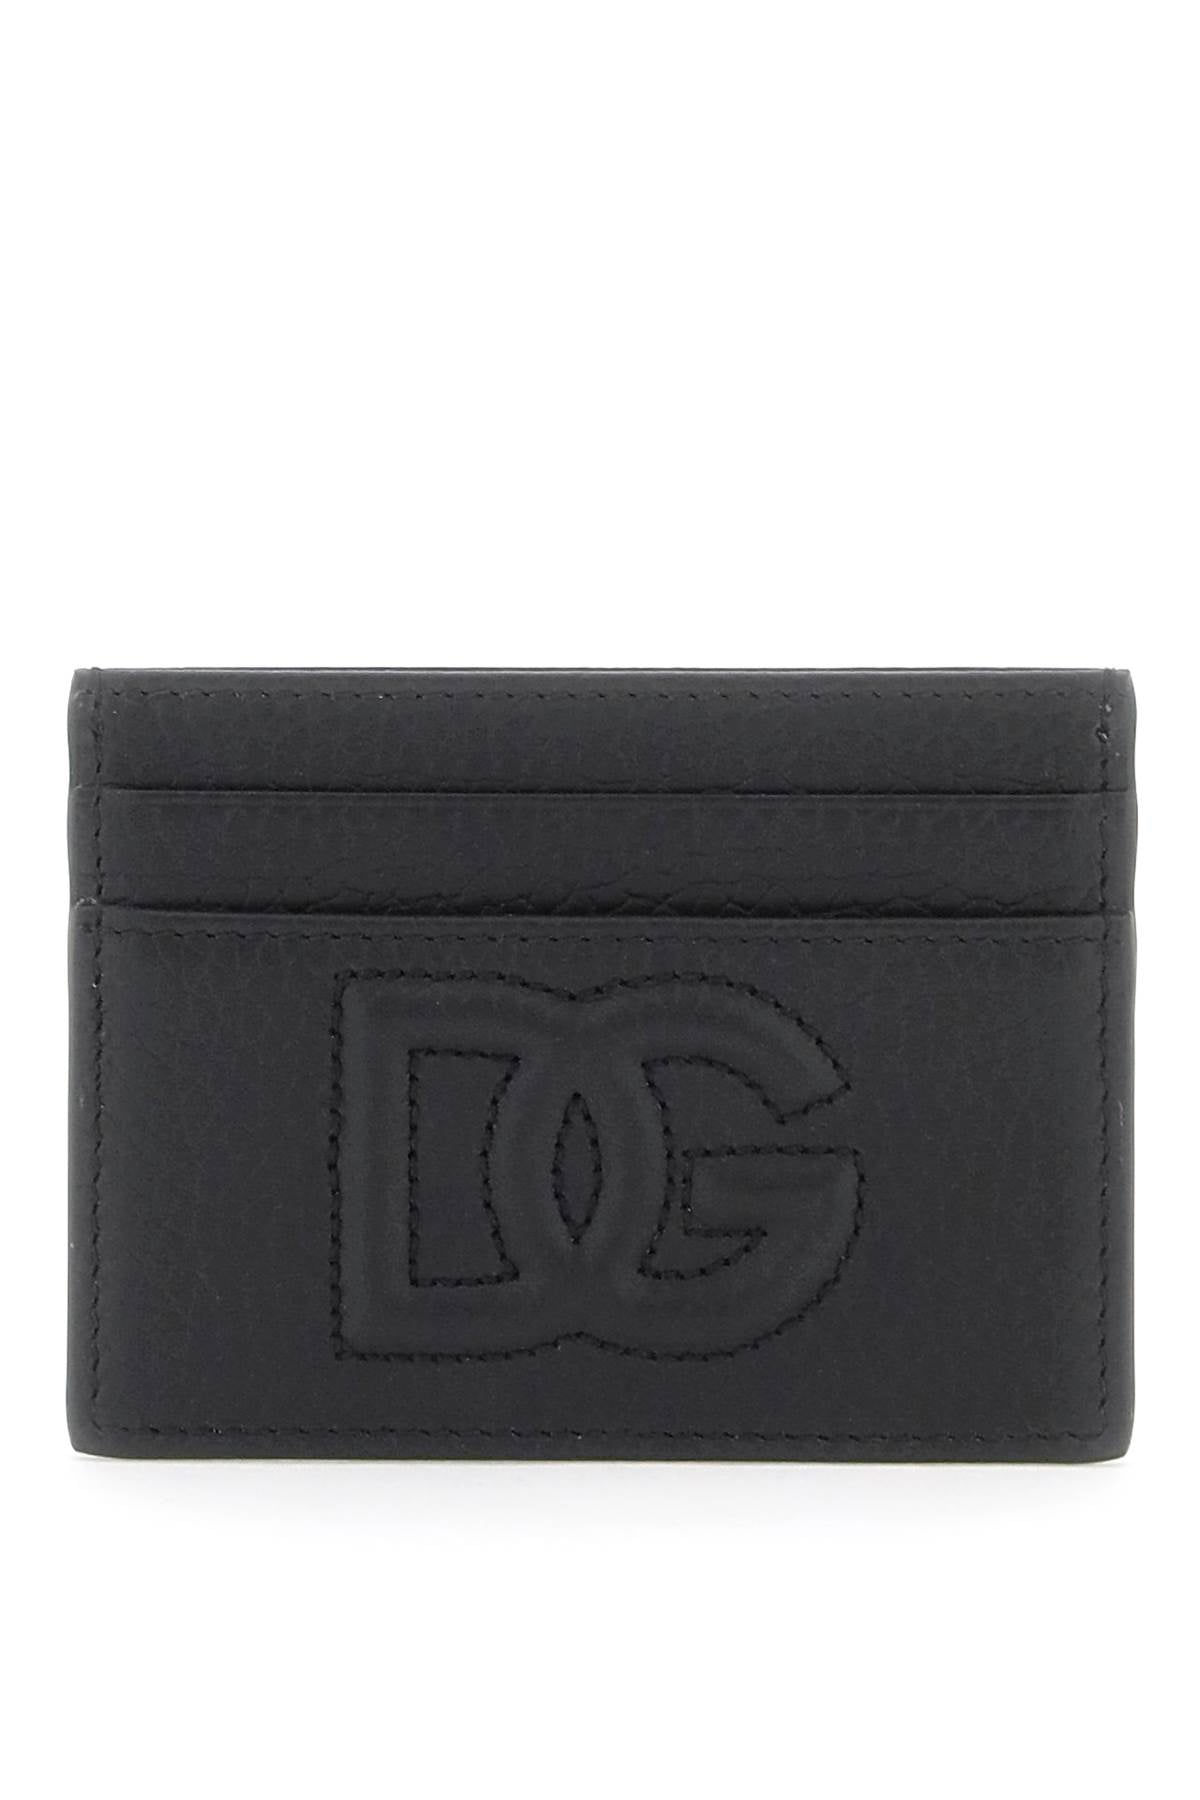 Dolce & Gabbana Dolce & gabbana cardholder with dg logo